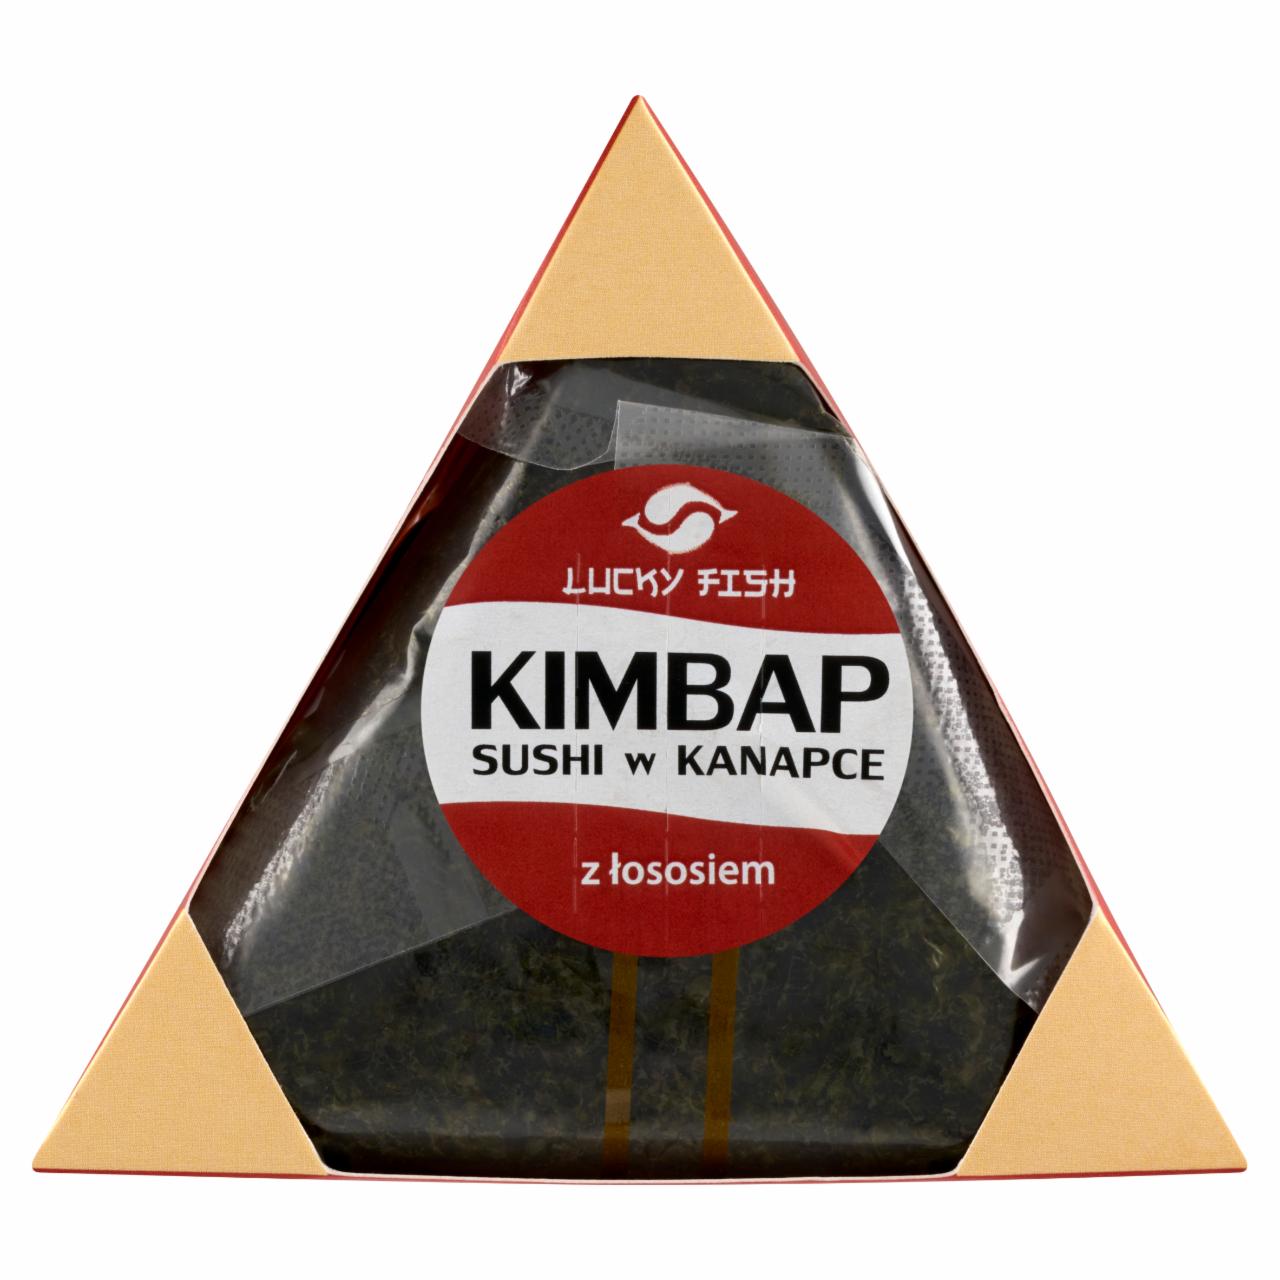 Zdjęcia - Kimbap sushi w kanapce z łososiem 120 g Lucky Fish